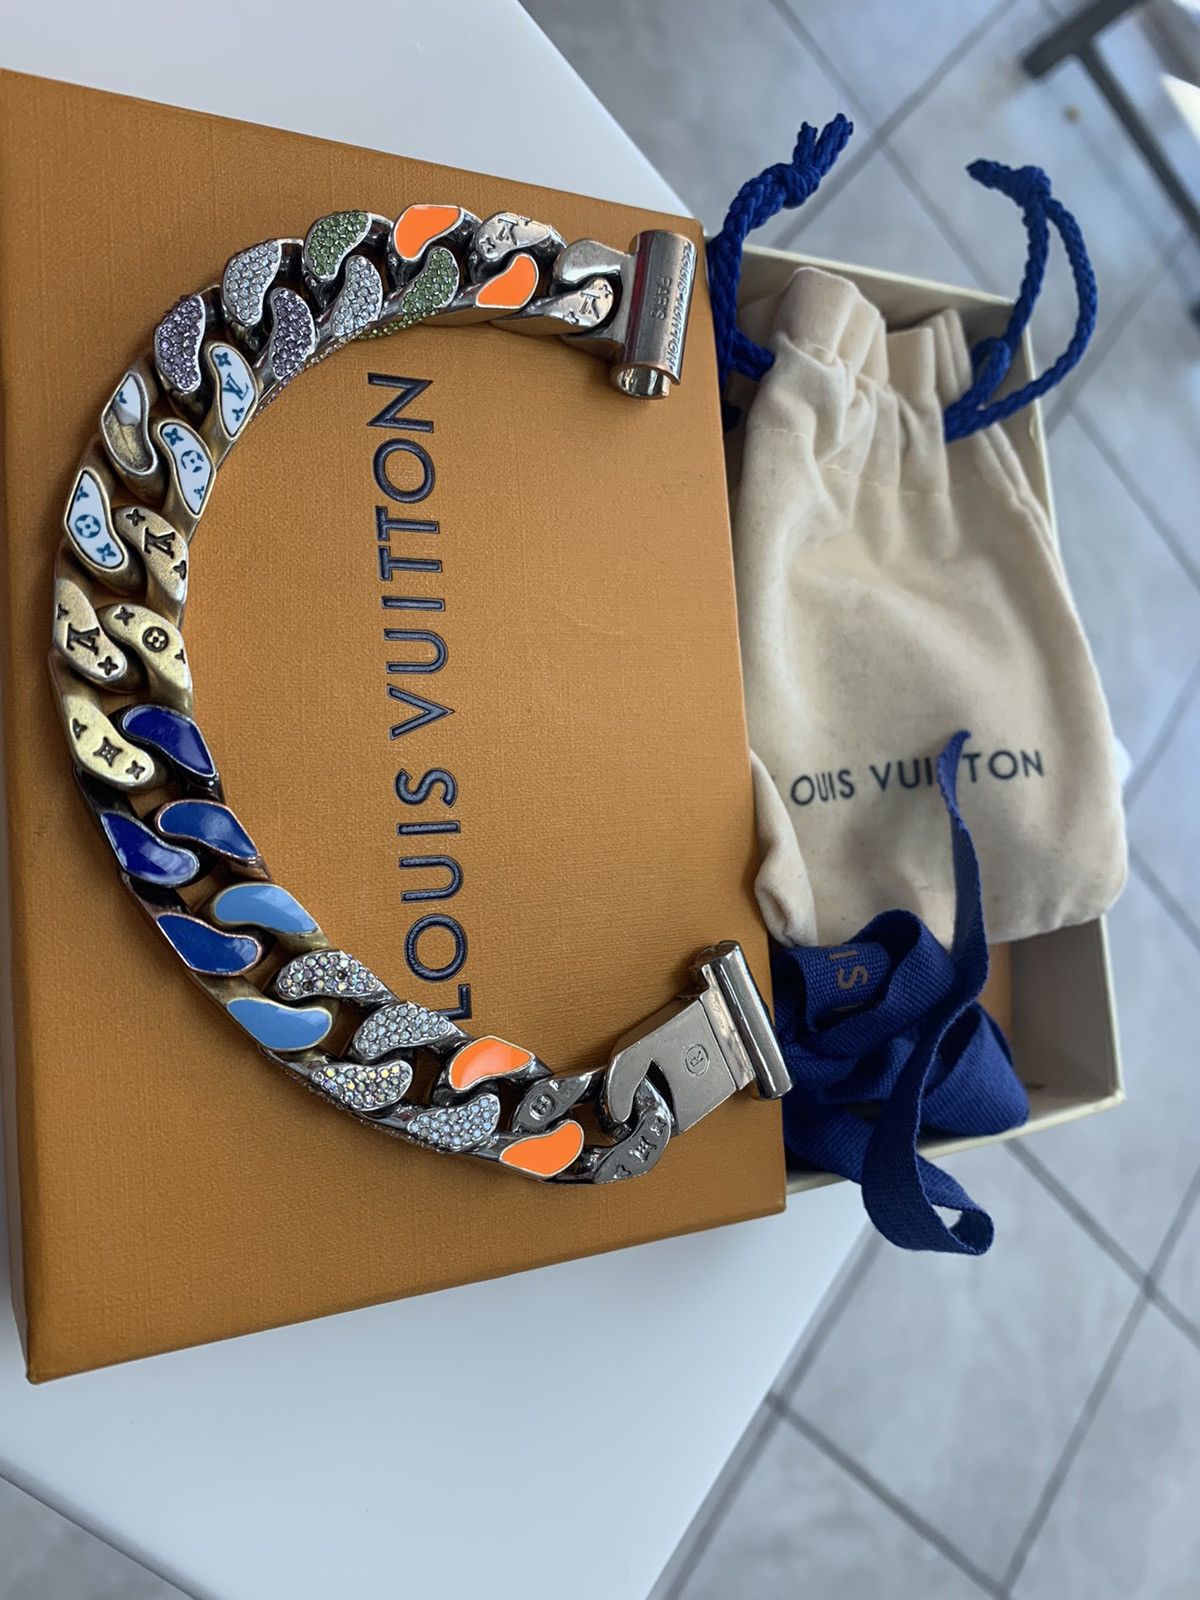 Grailed on Instagram: “Louis Vuitton Patches Bracelet